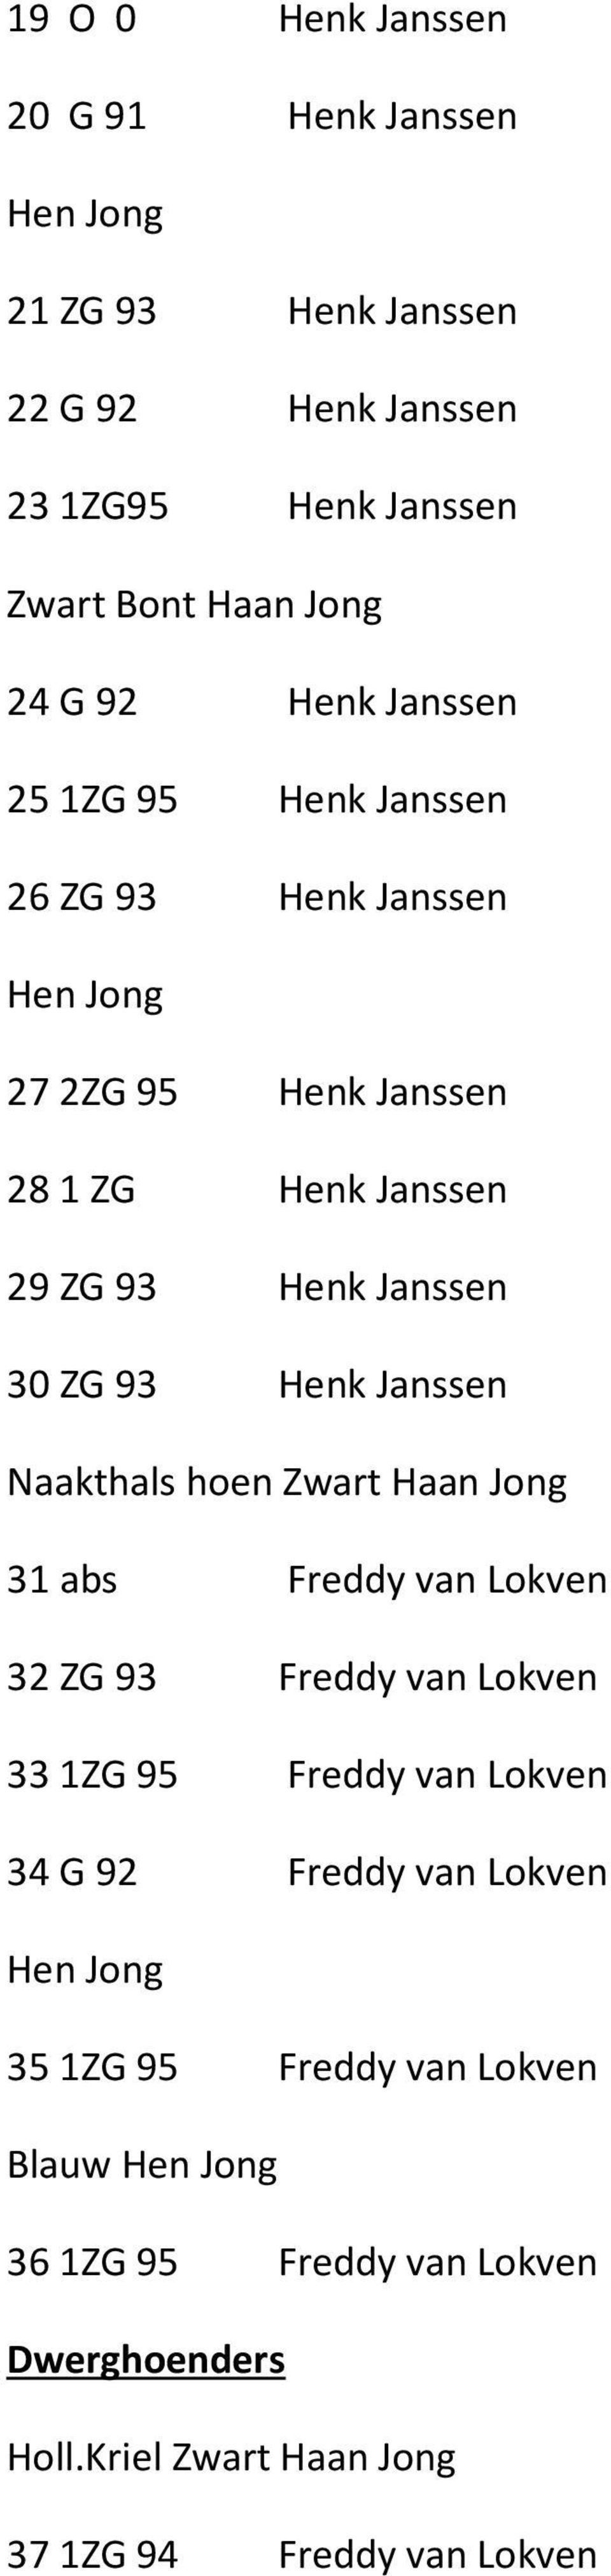 Janssen Naakthals hoen Zwart Haan Jong 31 abs Freddy van Lokven 32 ZG 93 Freddy van Lokven 331ZG 95 Freddy van Lokven 34 G 92 Freddy